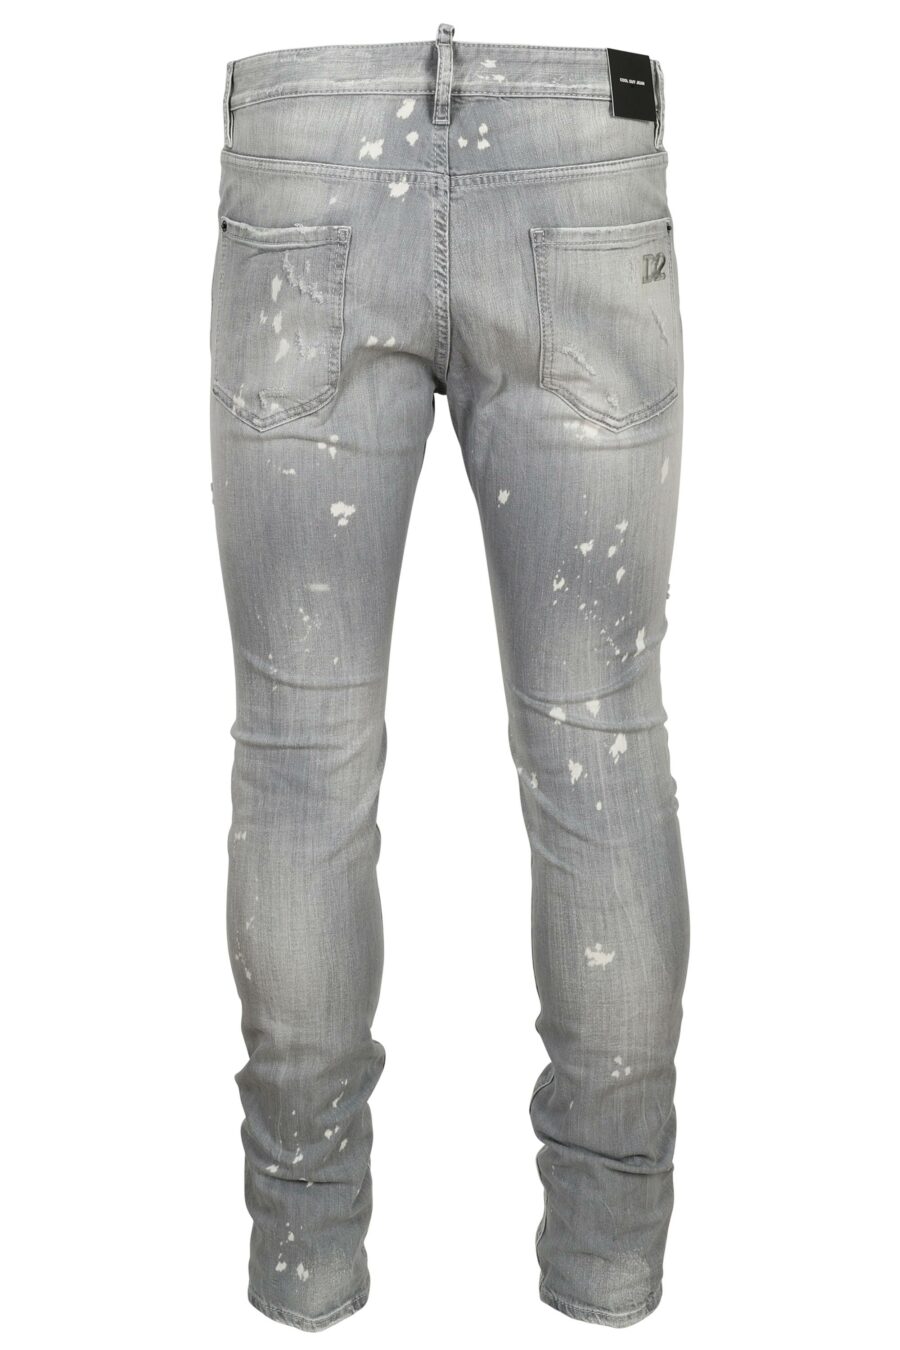 Pantalon gris "cool guy jean" avec peinture blanche et déchirures - 8054148474218 1